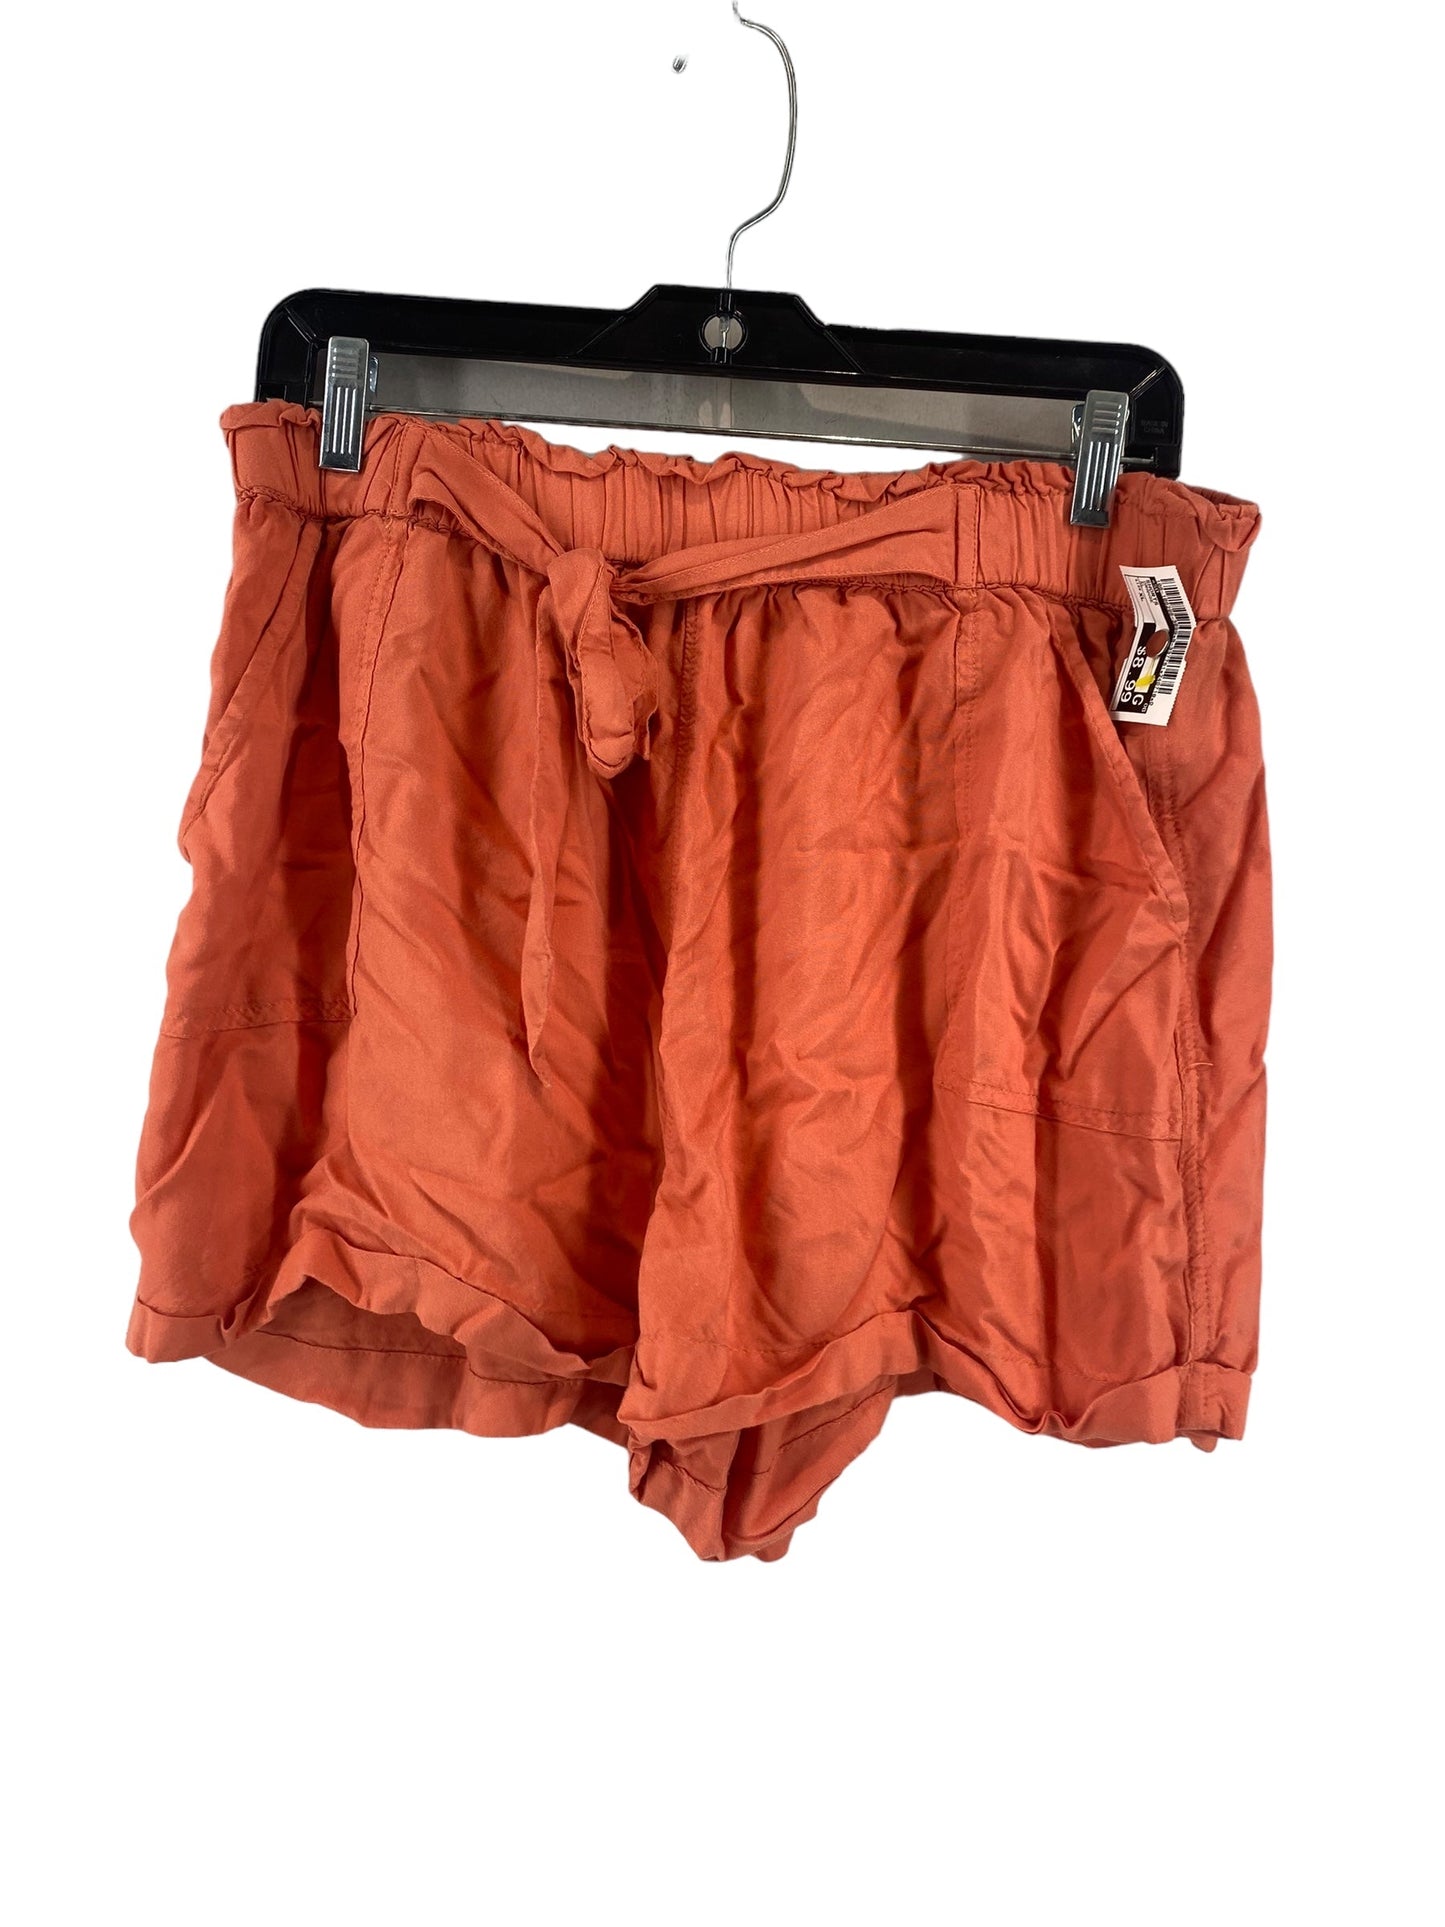 Orange Shorts So, Size Xl